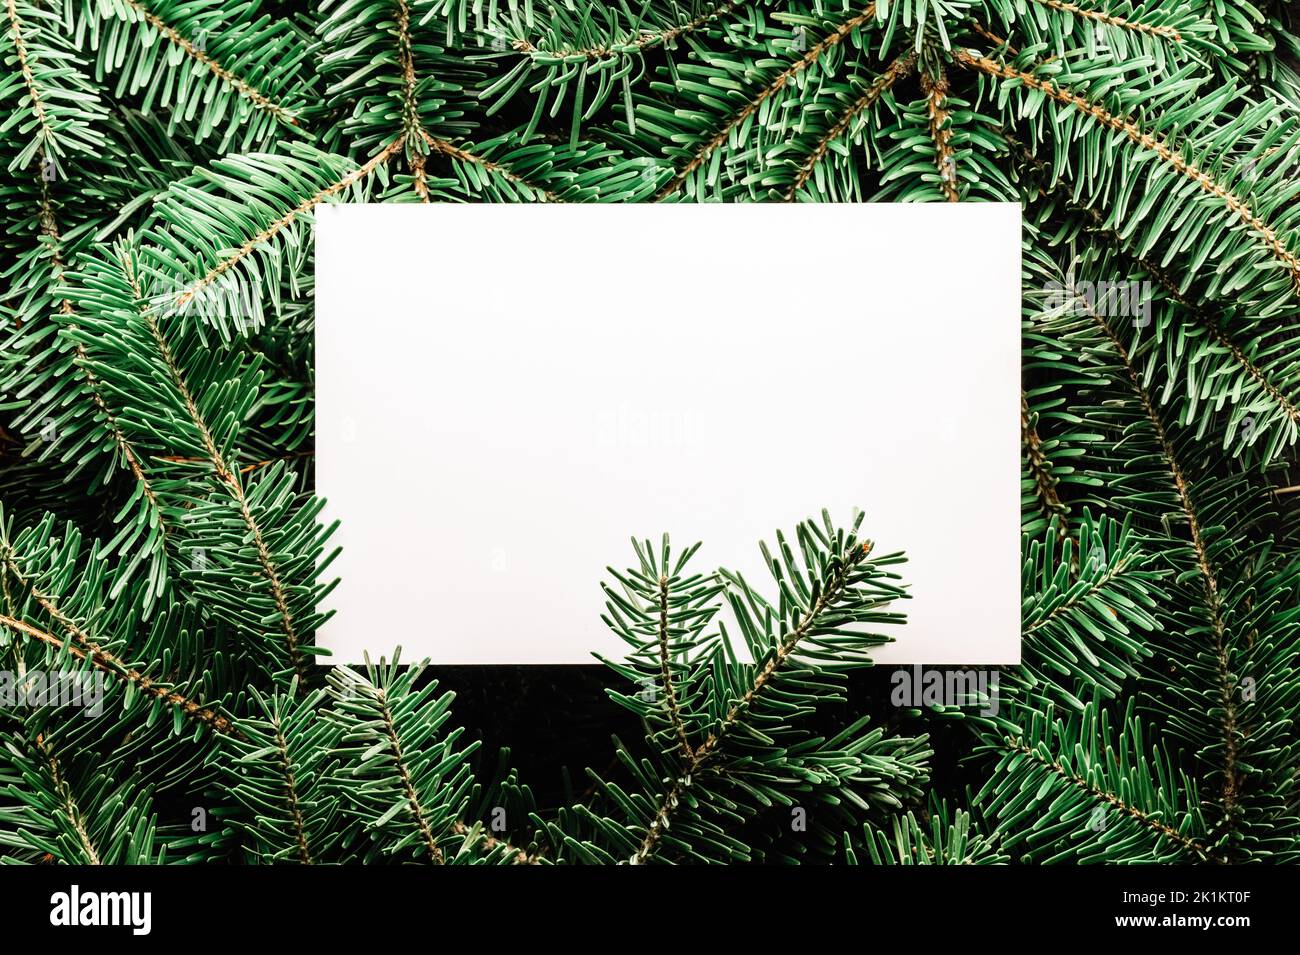 Arrière-plan créatif des fêtes de Noël avec des branches de sapin et des boules de noël rouges. Flat lay, vue de dessus. Joyeux Noël Banque D'Images